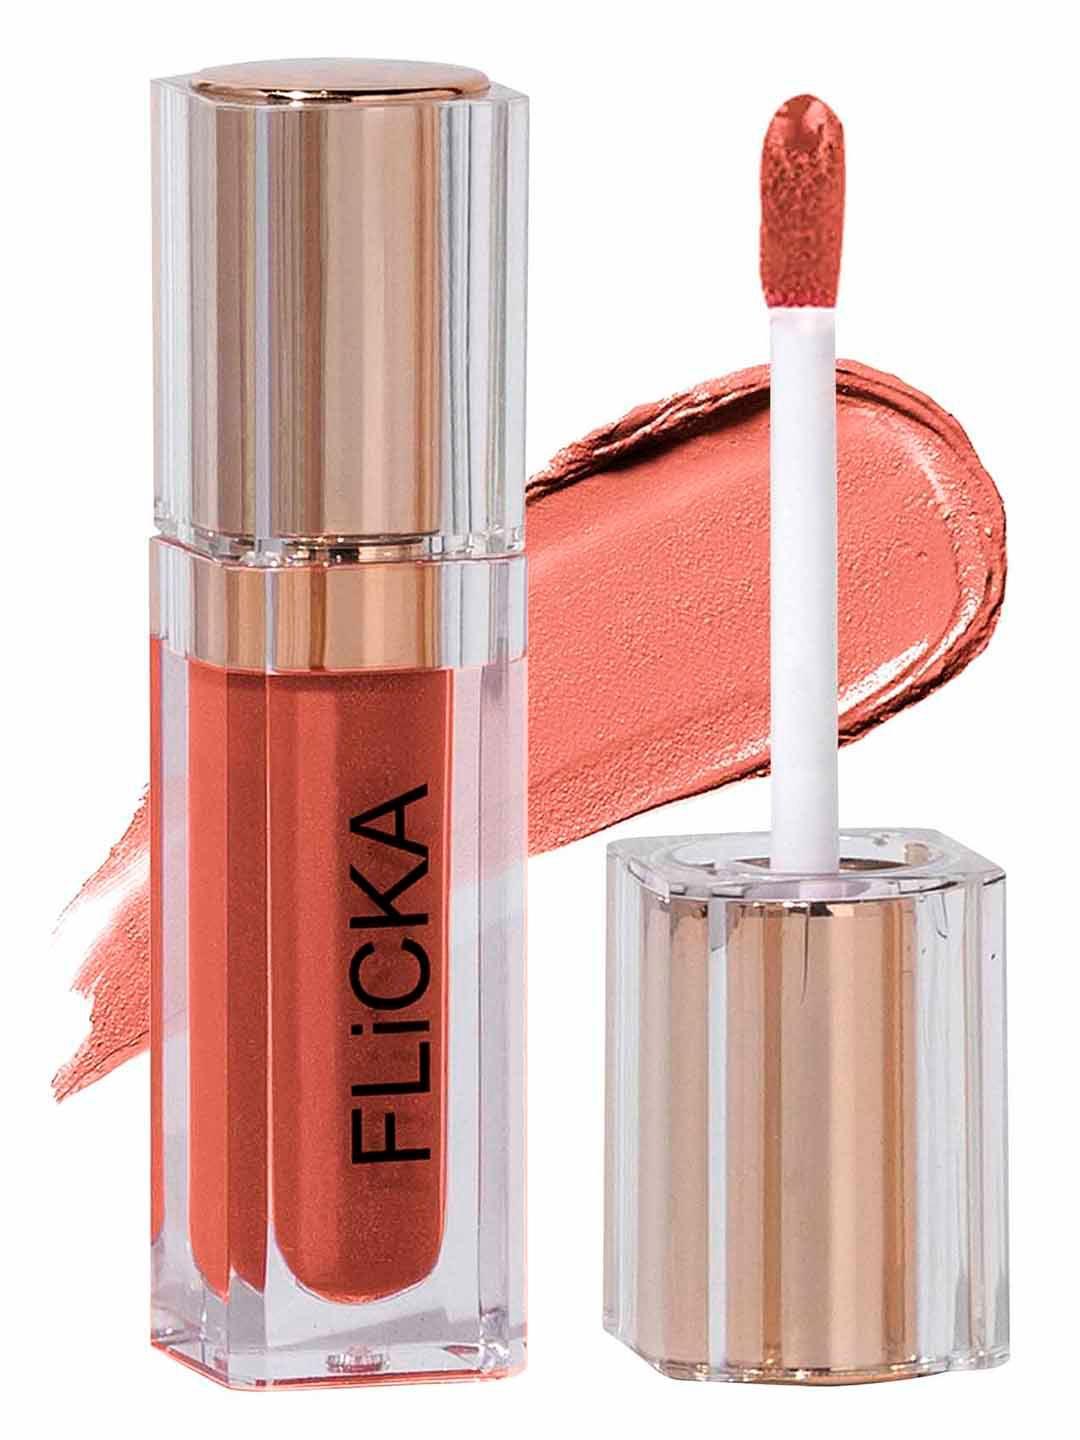 flicka-r-u-ready-matte-finish-liquid-lipstick-with-vitamin-e-5ml---oatmeal-06